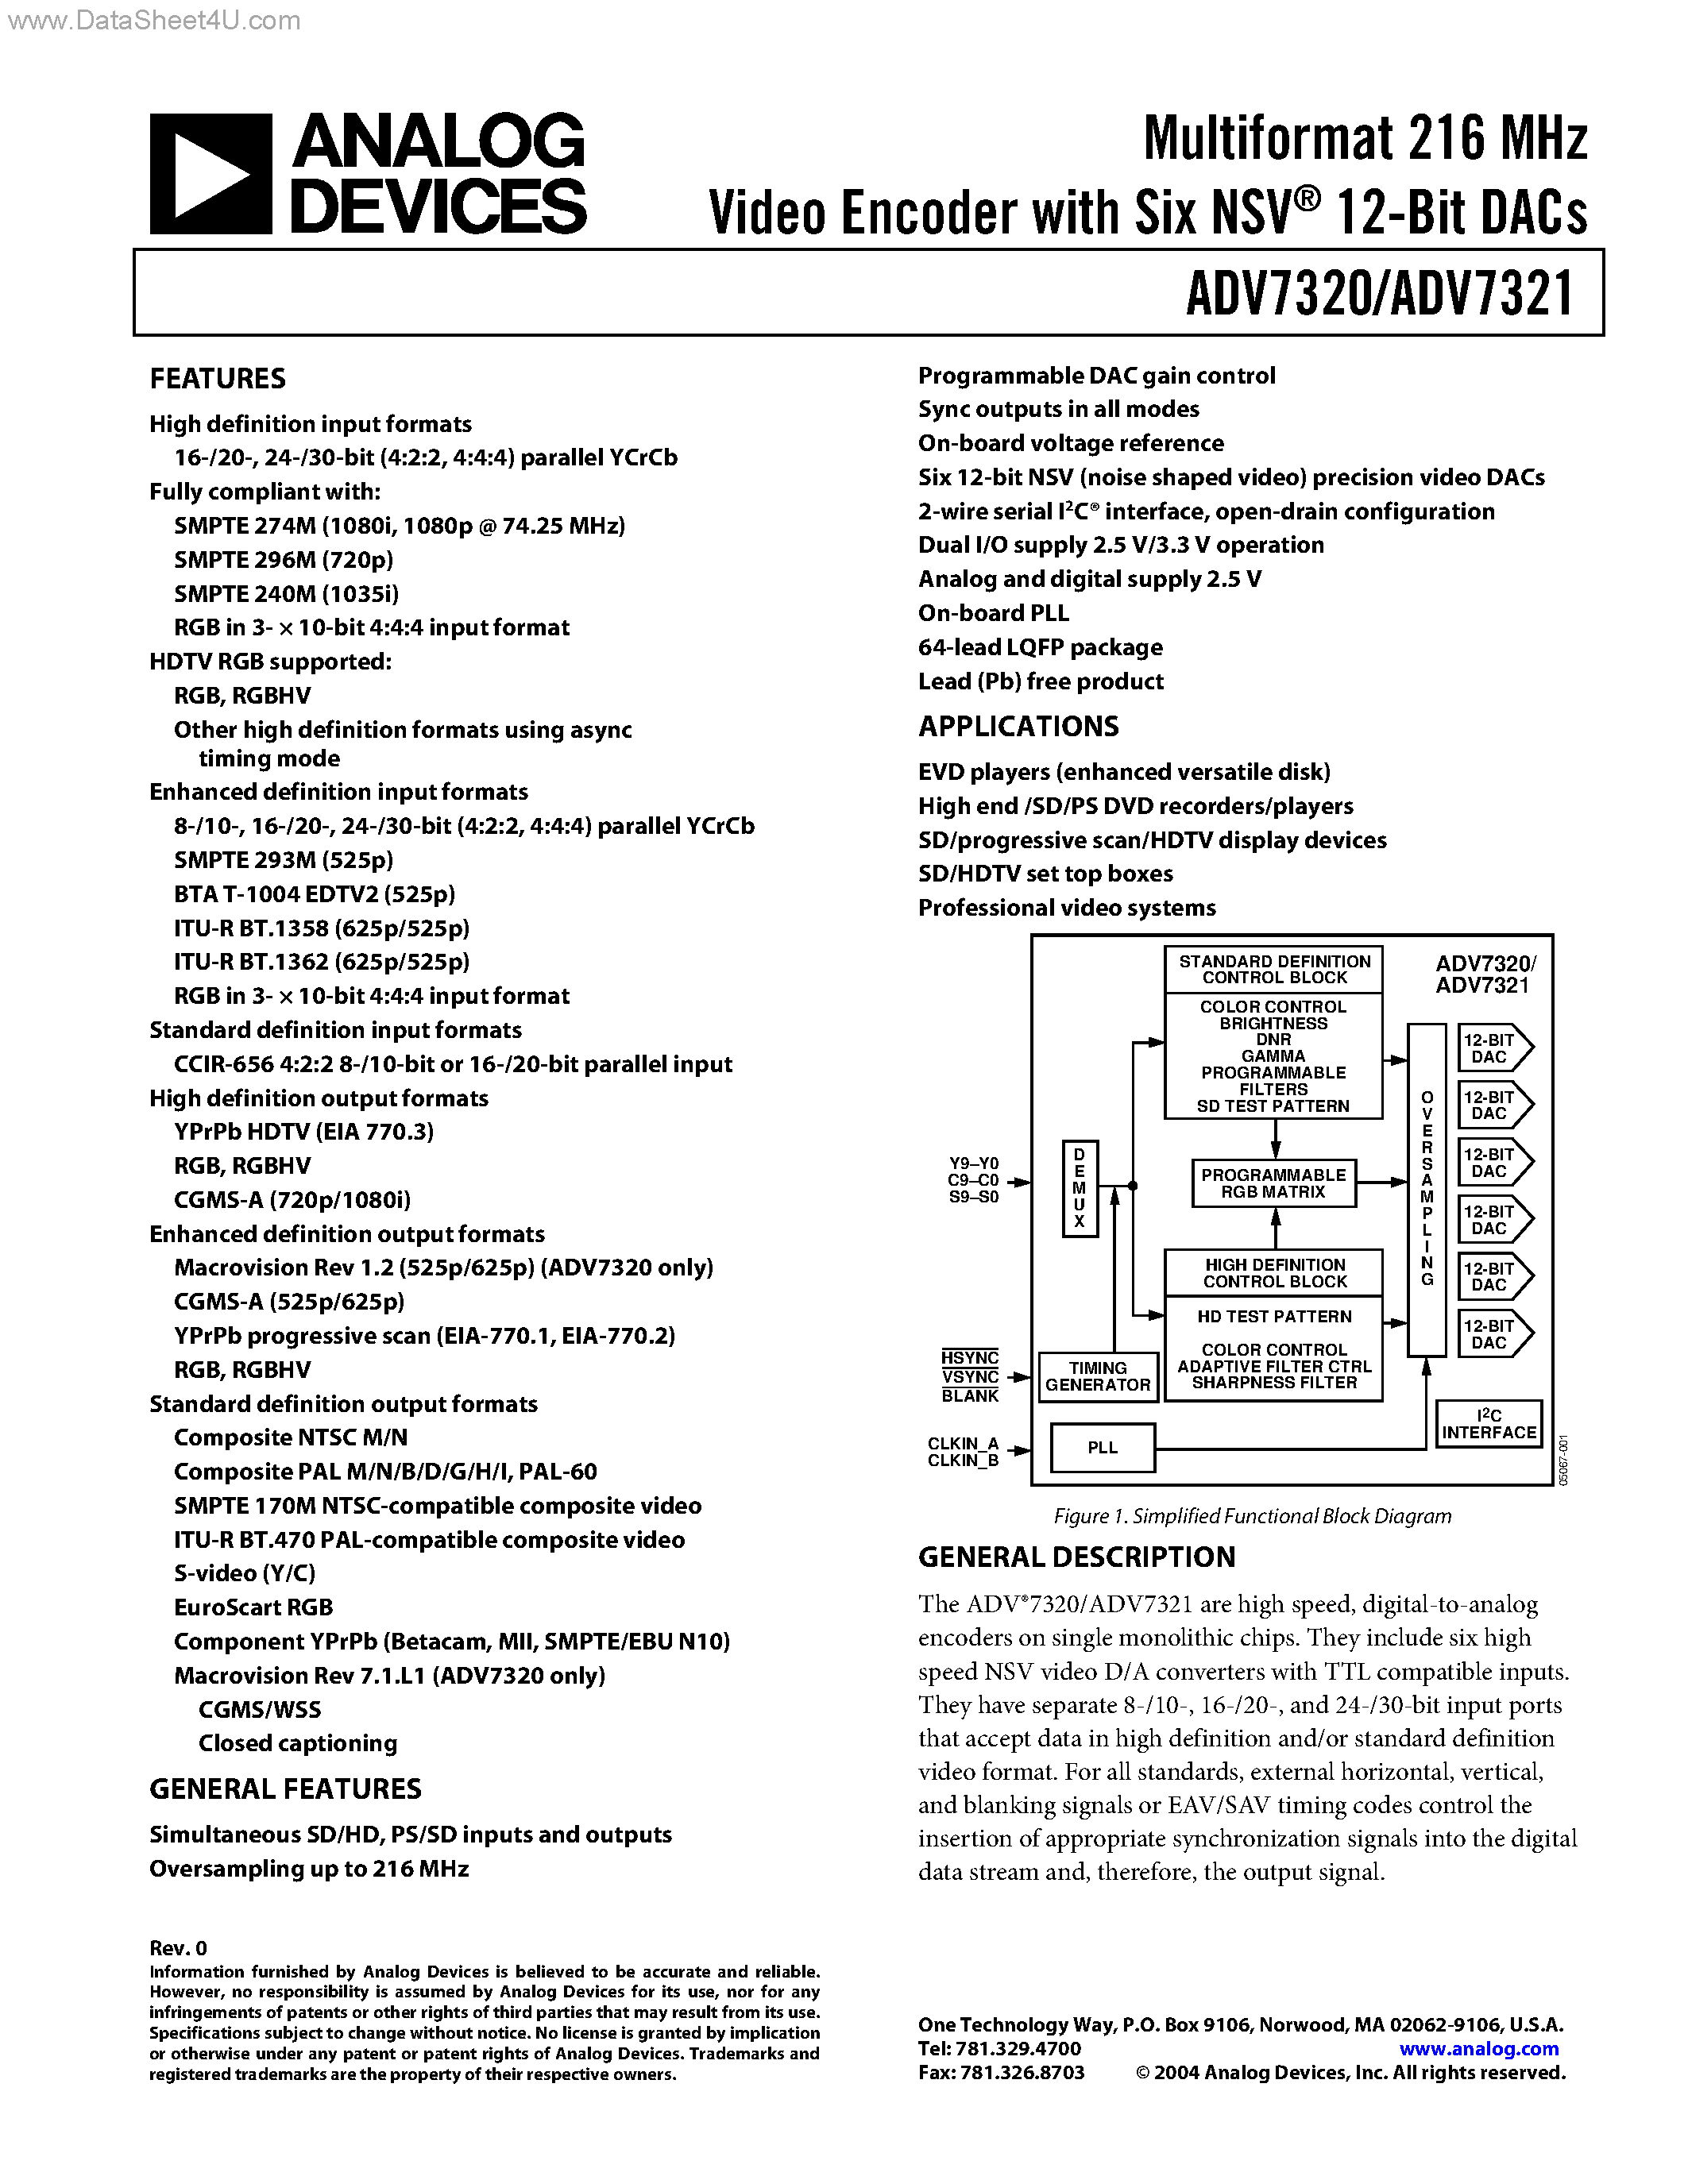 Datasheet ADV7320 - (ADV7320 / ADV7321) Multiformat 216 MHz Video Encoder page 1